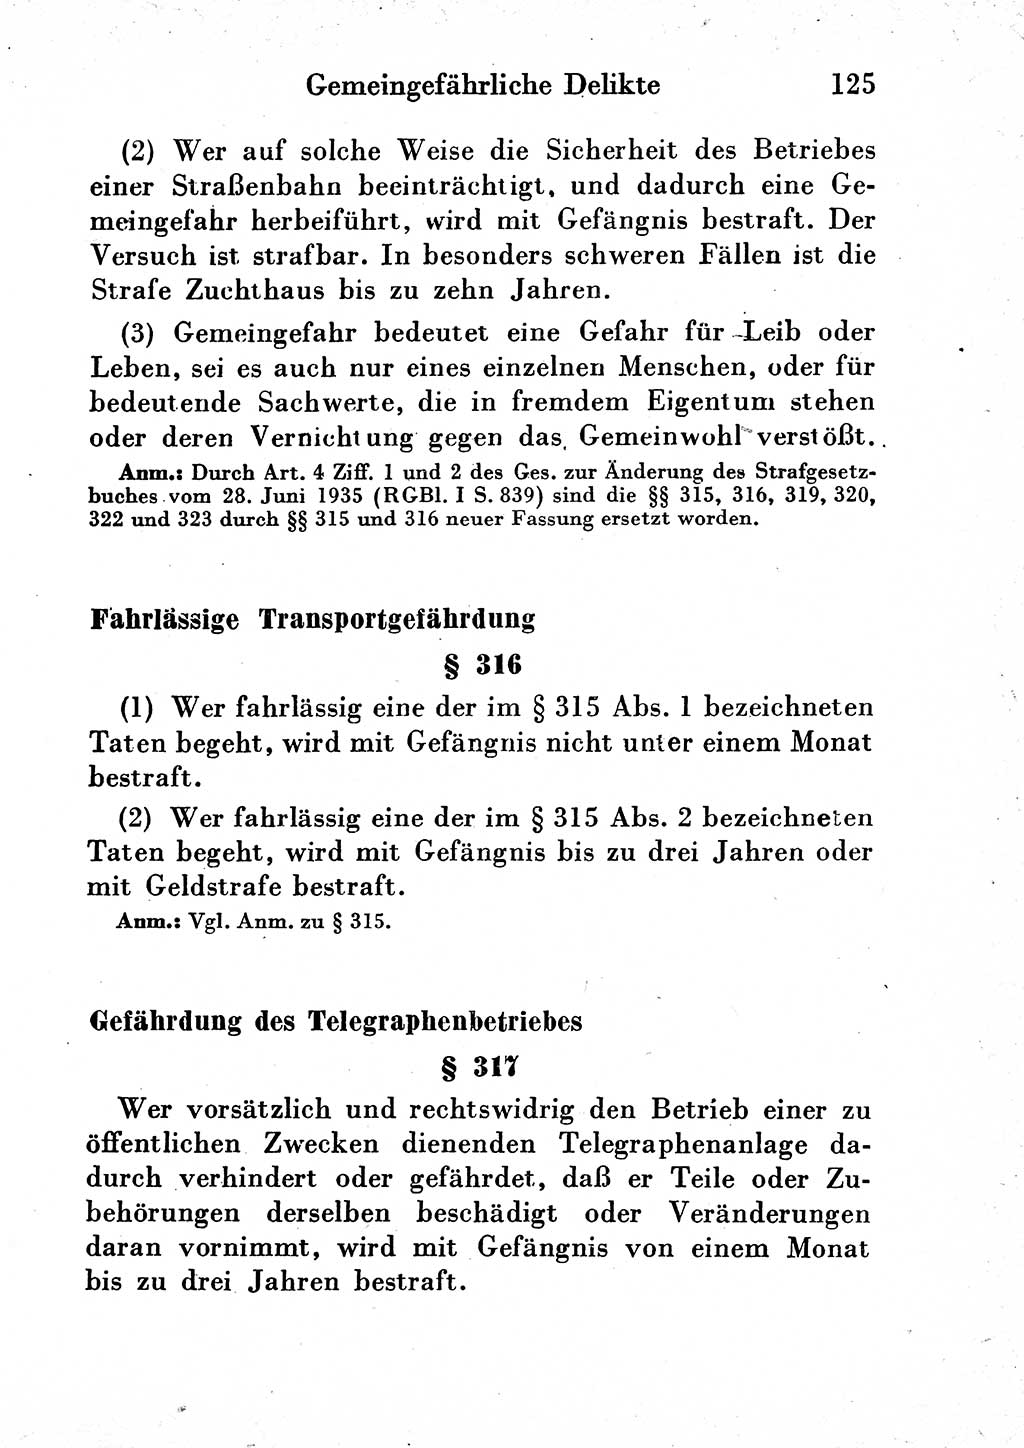 Strafgesetzbuch (StGB) und andere Strafgesetze [Deutsche Demokratische Republik (DDR)] 1954, Seite 125 (StGB Strafges. DDR 1954, S. 125)